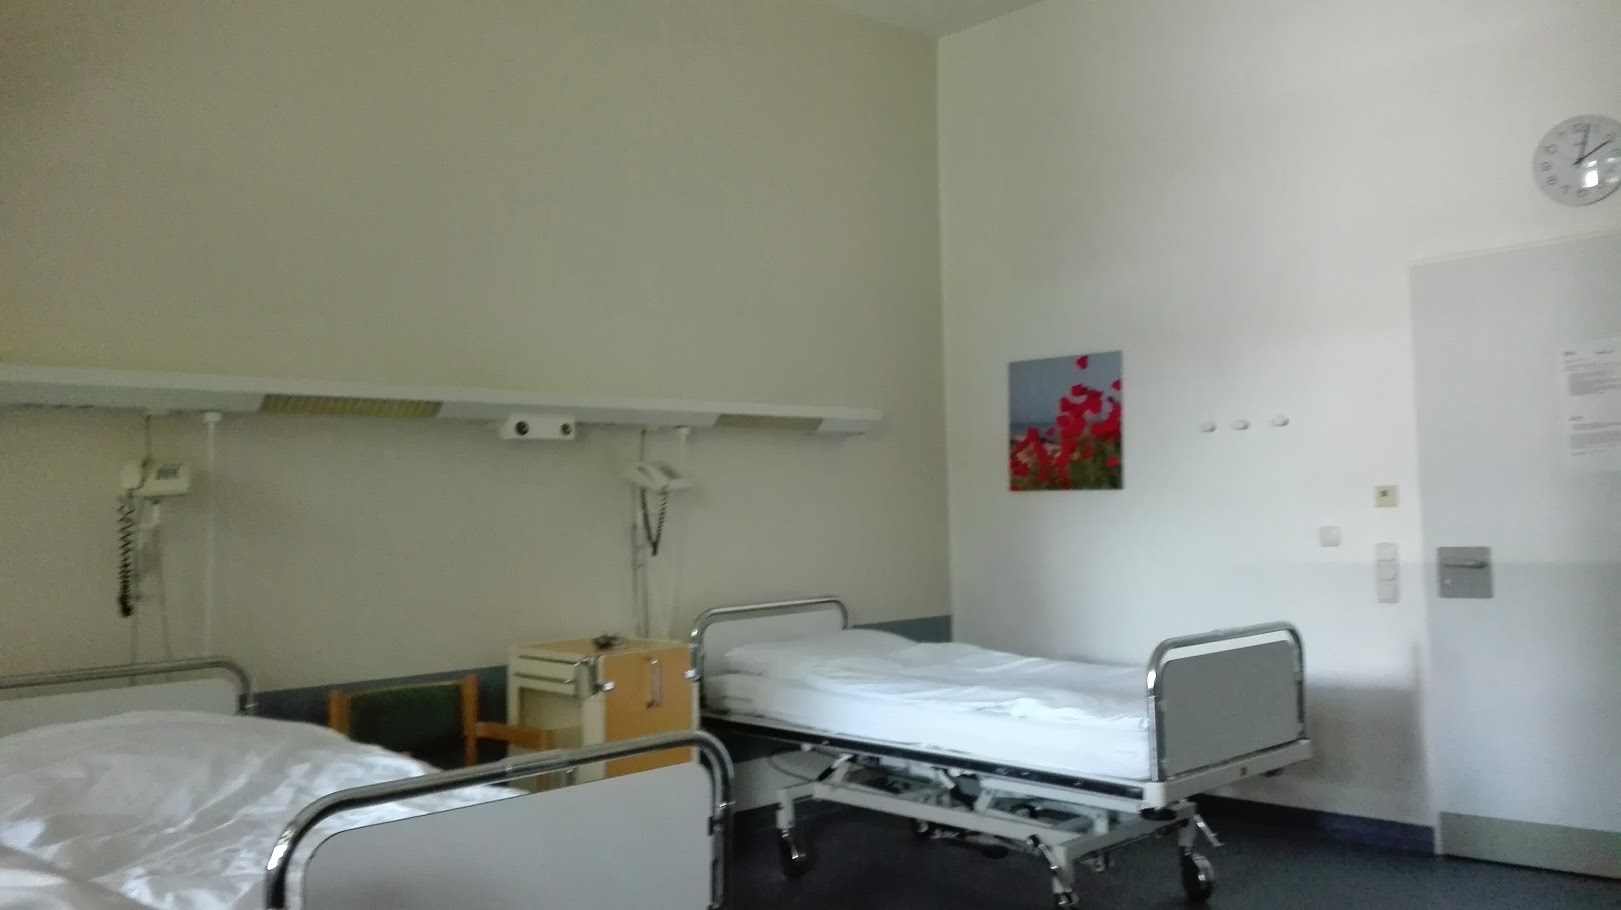 Mein Krankenzimmer in der Schönklinik Eilbek